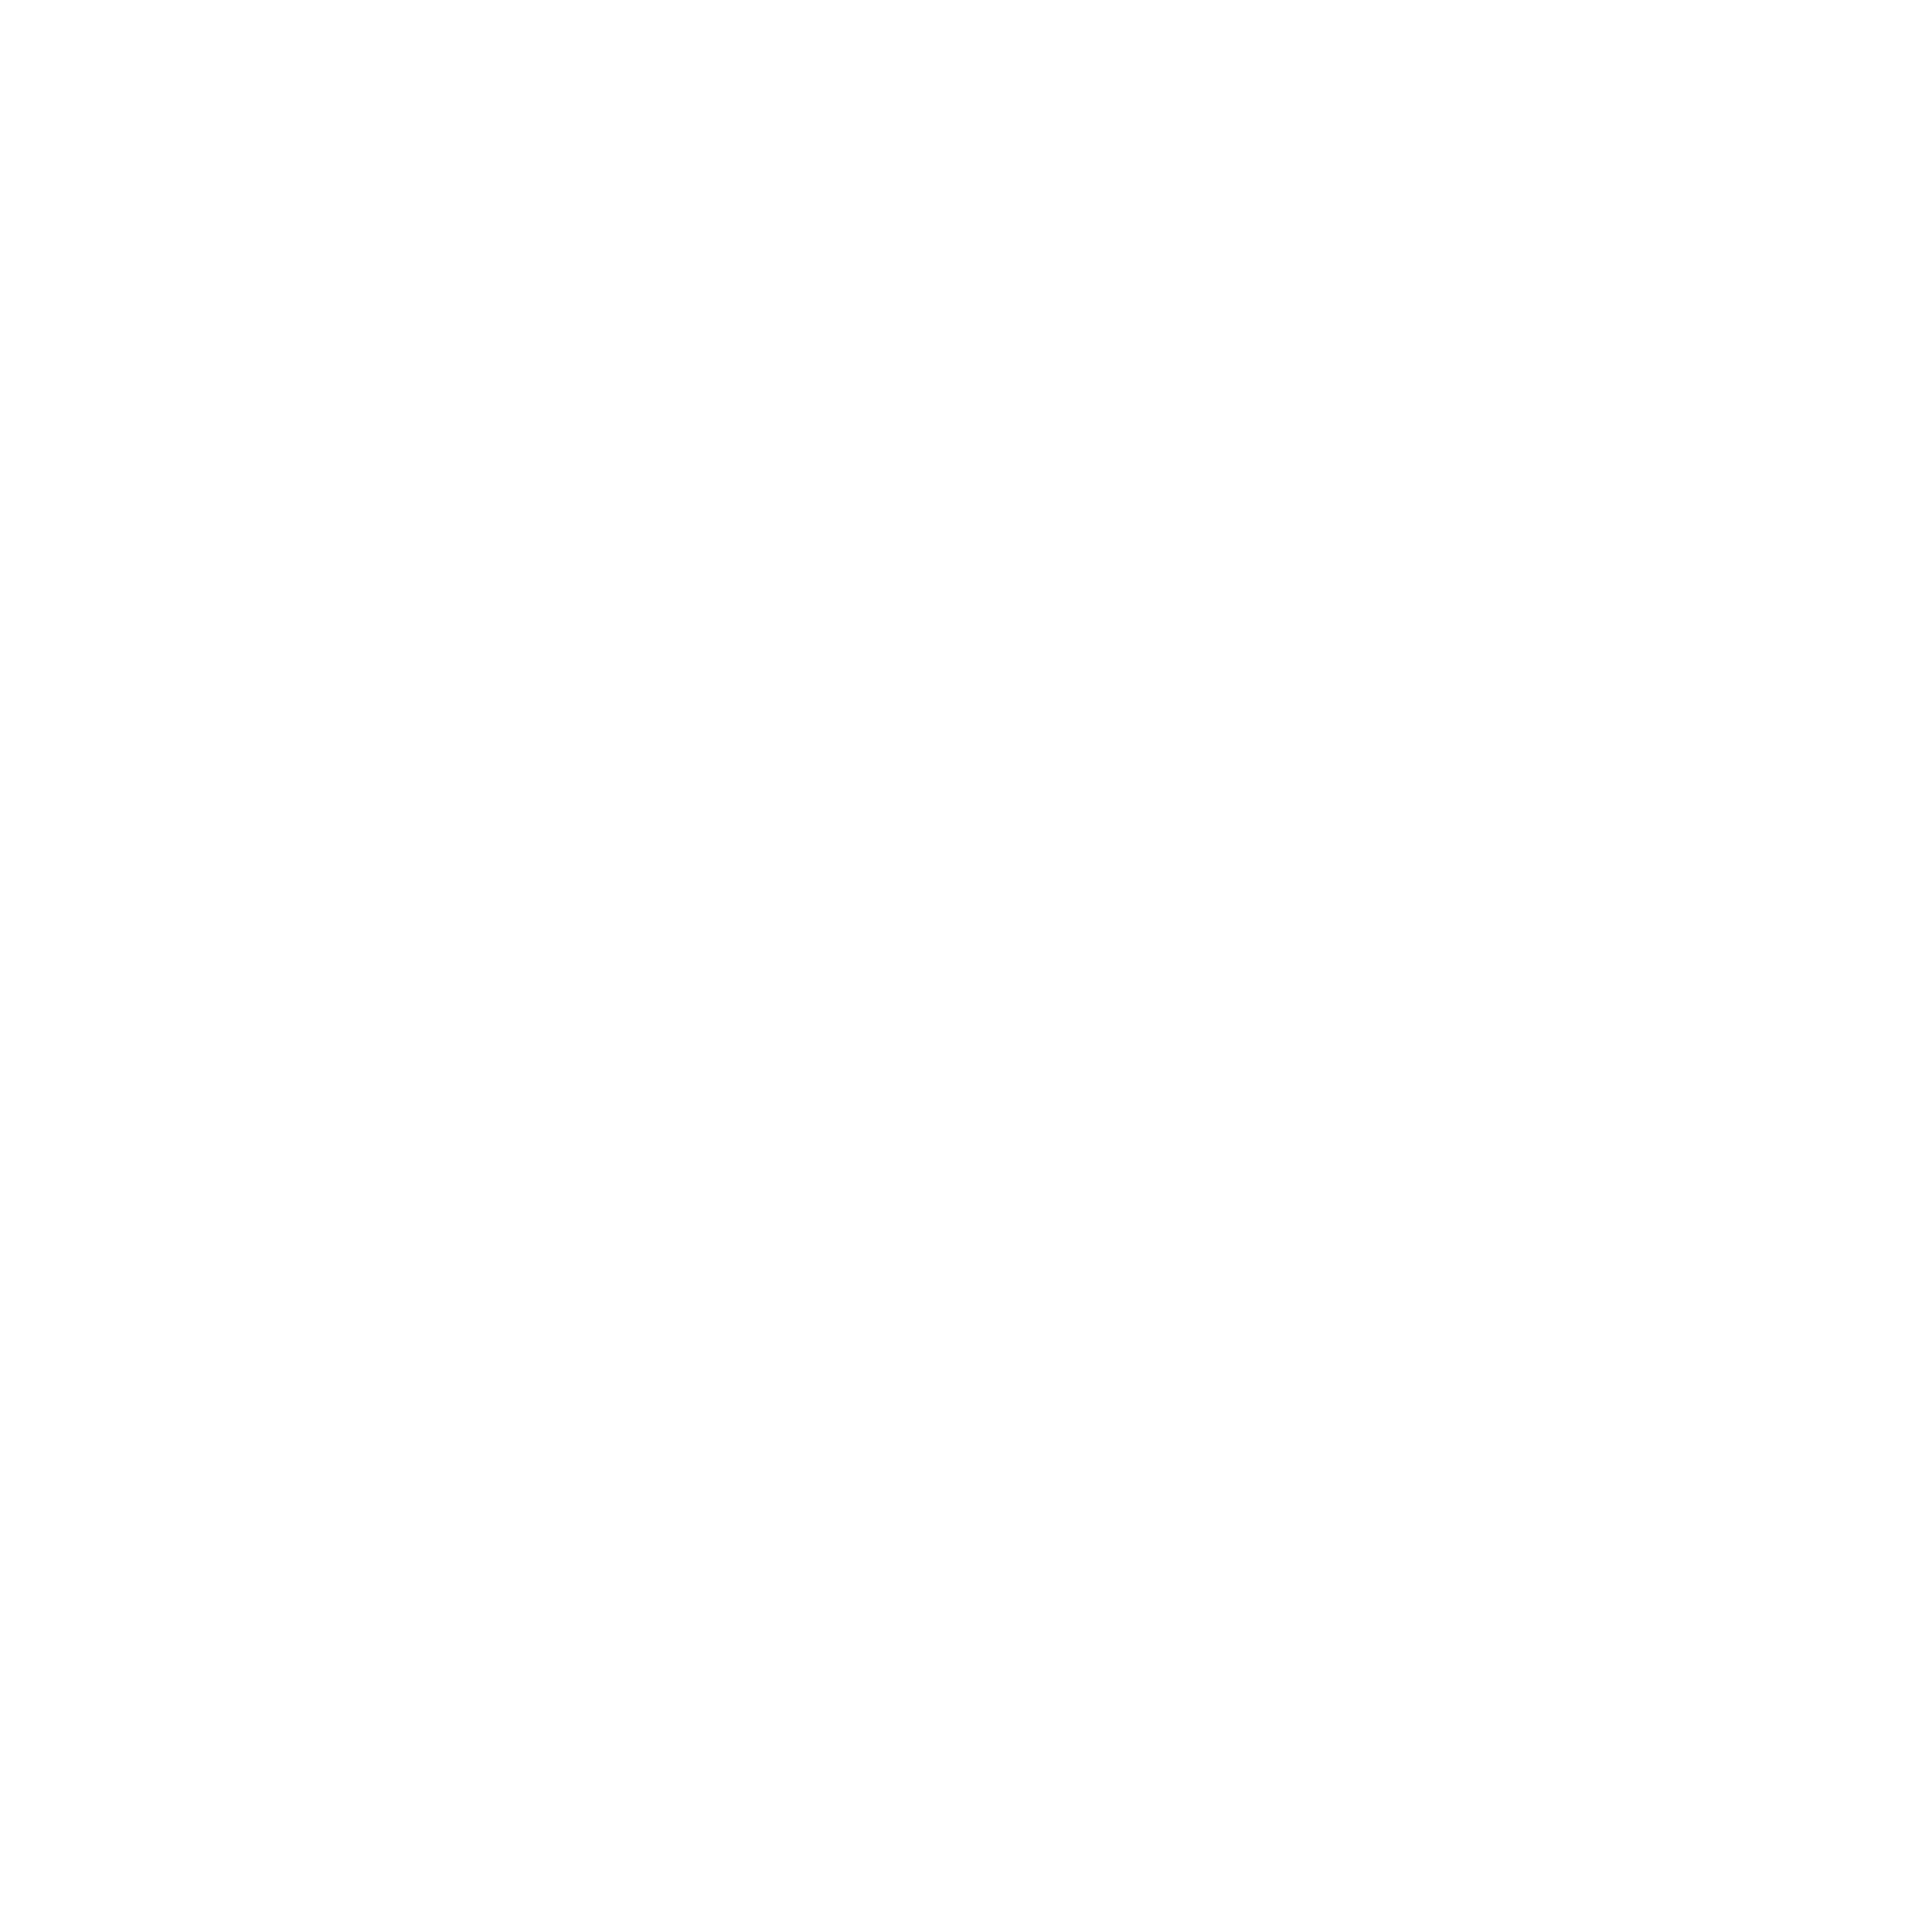 trans hotel logo white